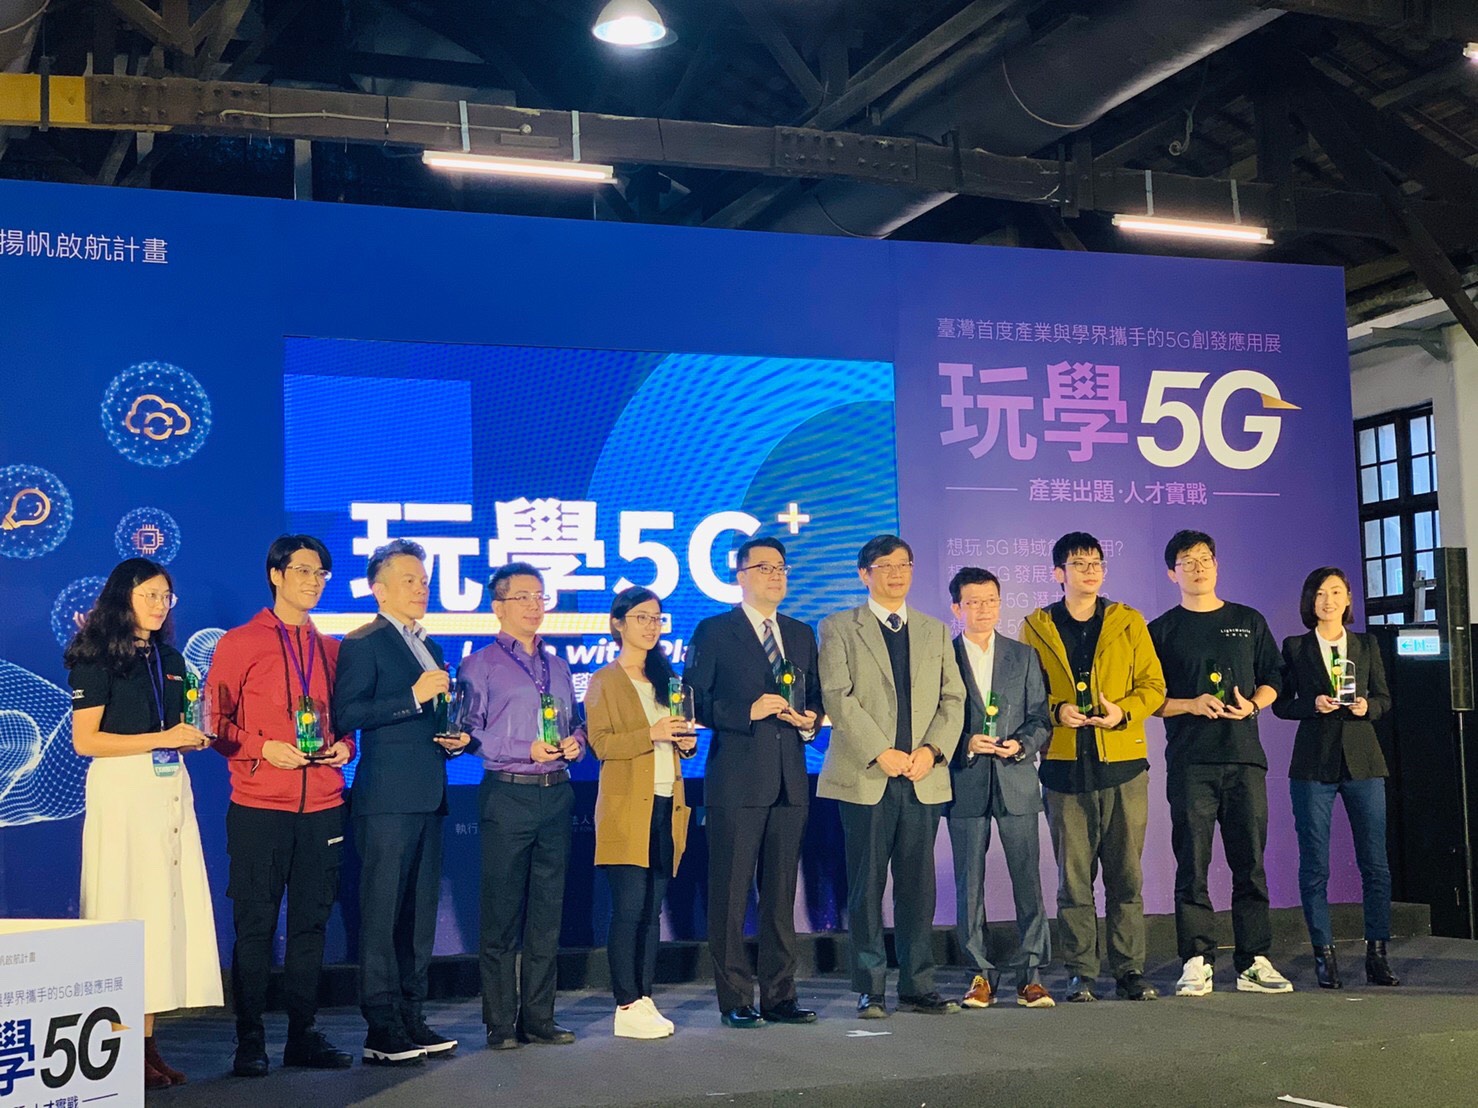 5G 產業化服務驗證實務 Spacethon頒獎典禮